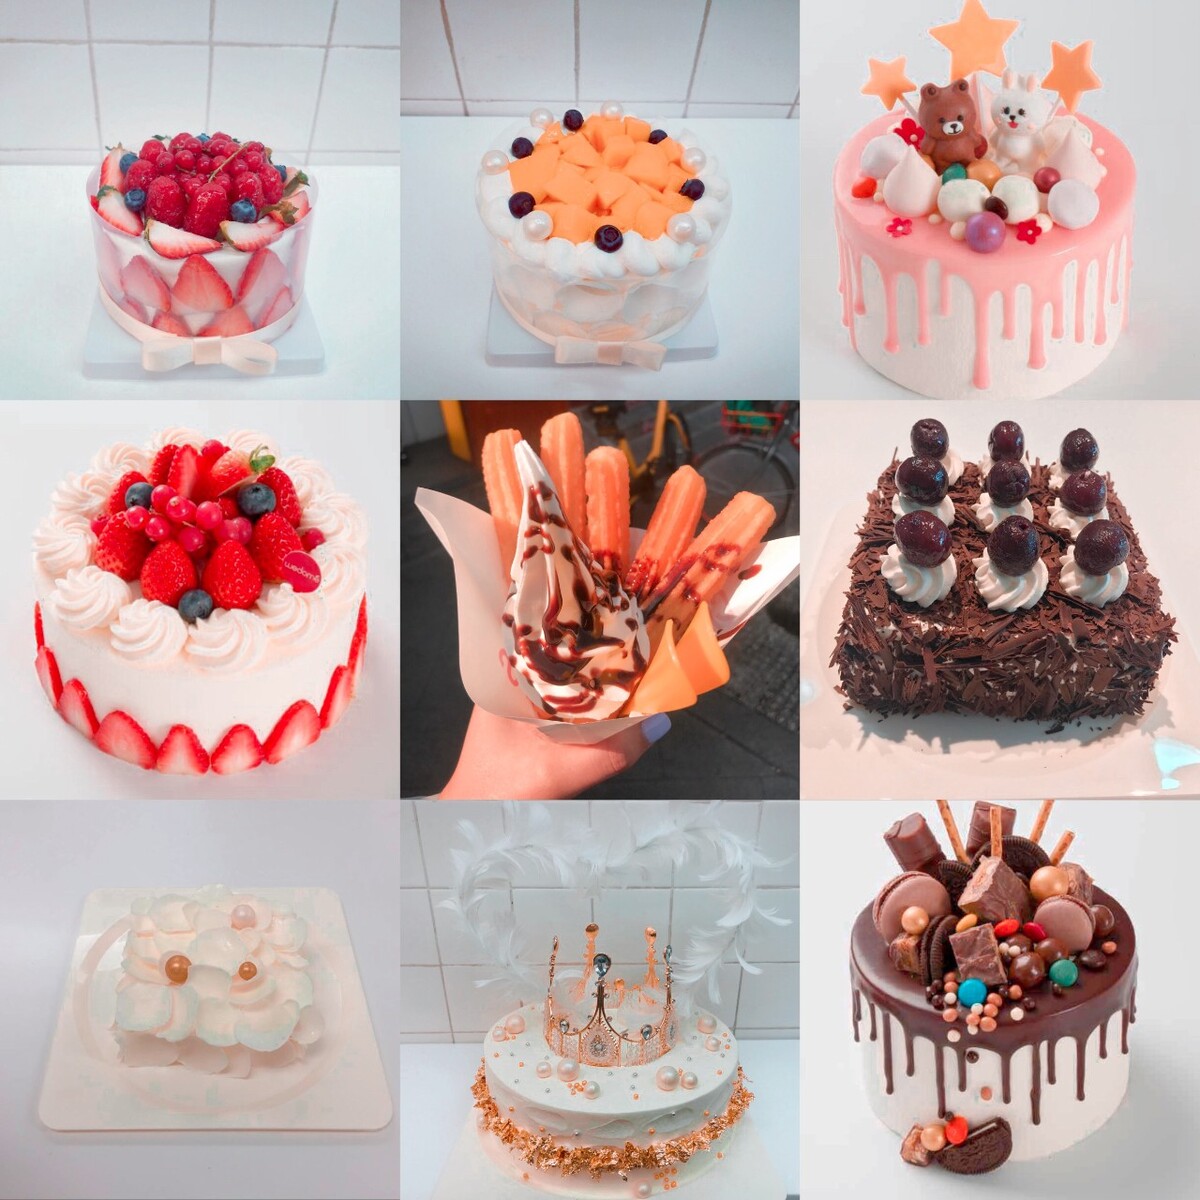 草莓怎么装饰蛋糕,蛋糕切成方块抹上奶油装饰草莓和蓝莓